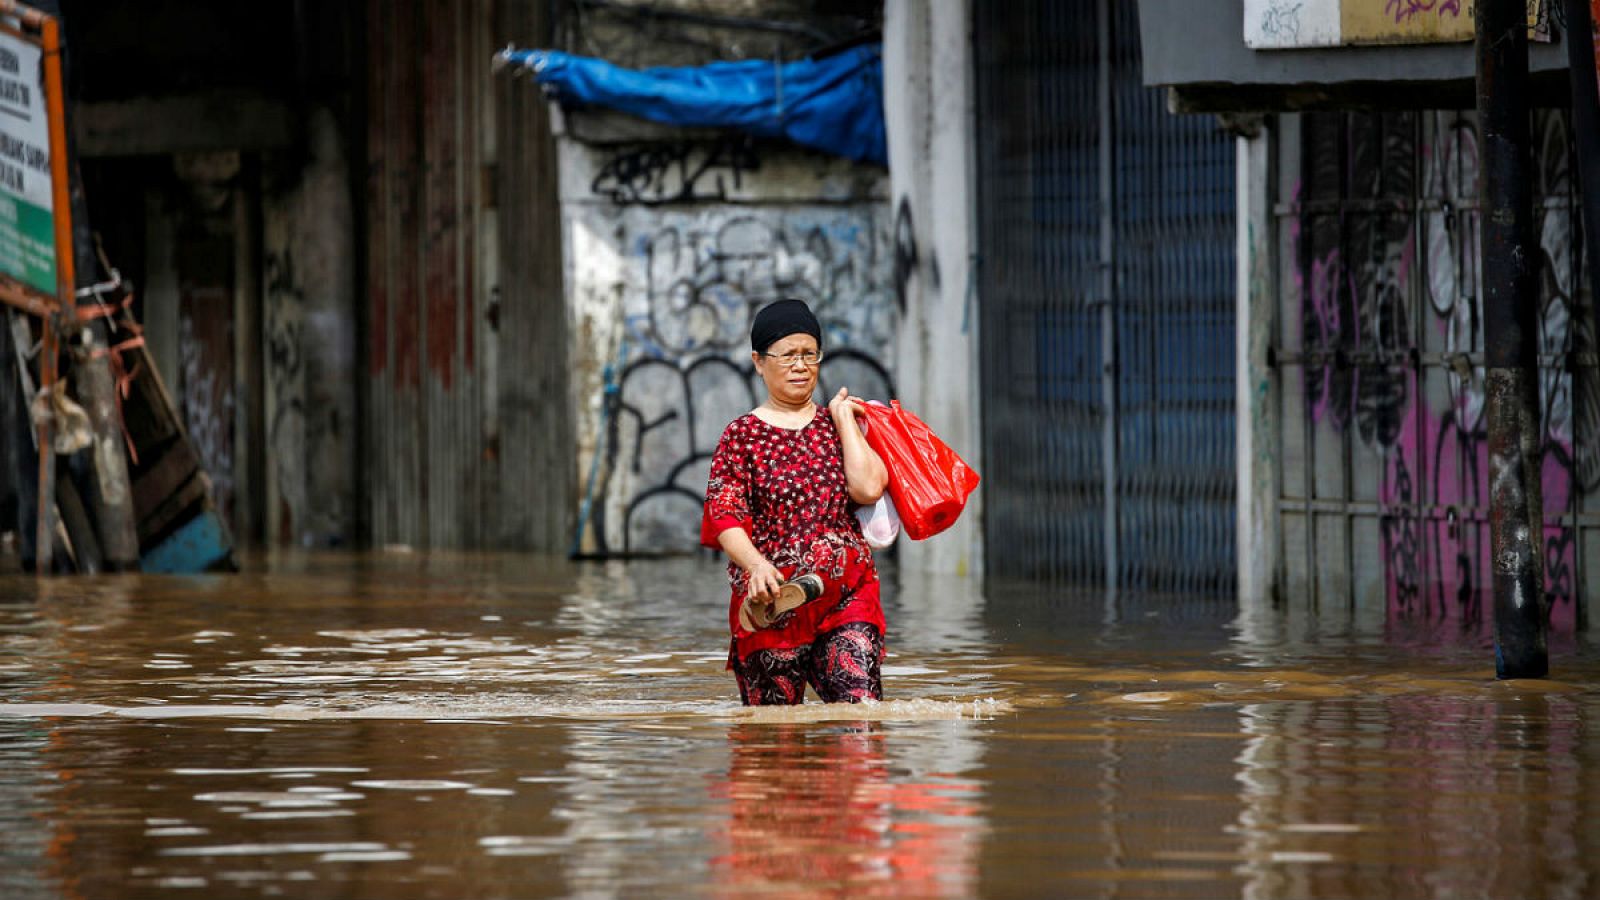 En la imagen, una mujer carga con sus pertenencias en medio de una gran riada.